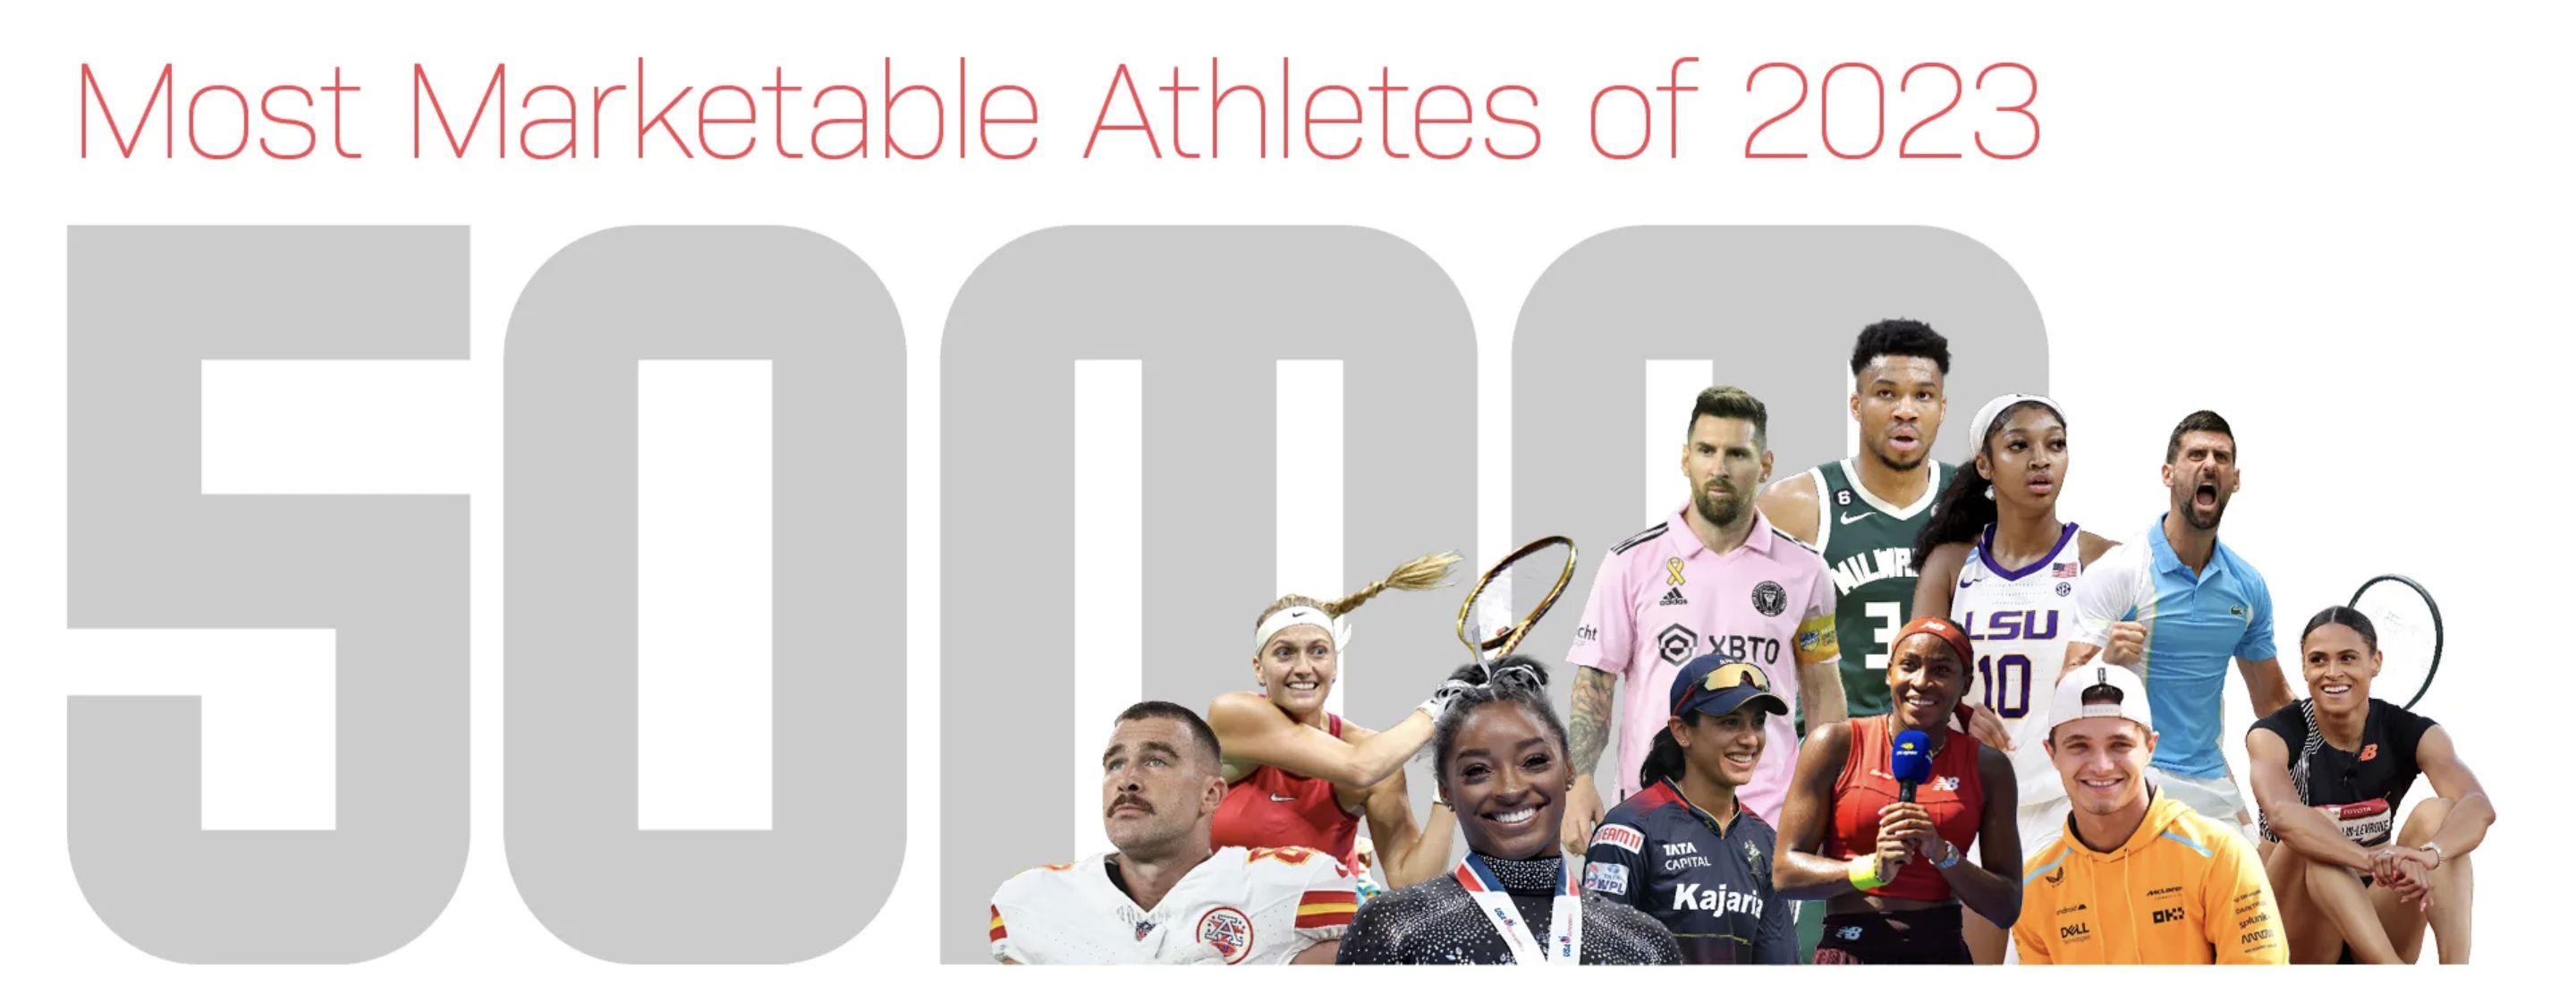 Il banner della classifica 2023 degli atleti a più alto valore commerciale